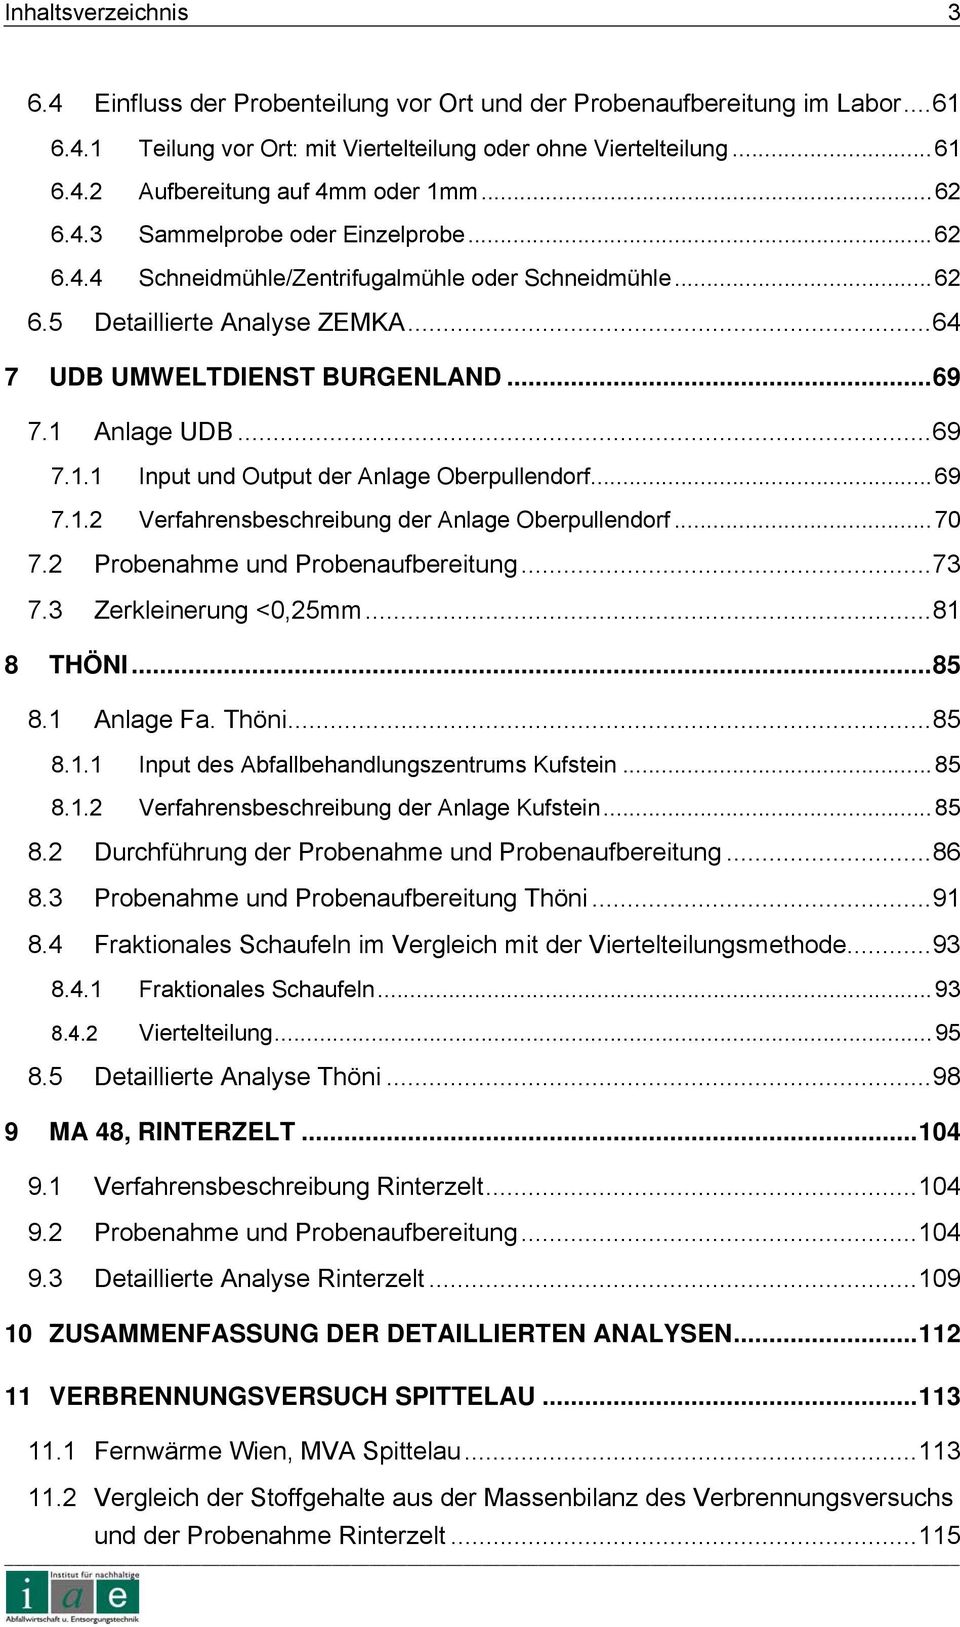 Anlage UDB...69 7.1.1 Input und Output der Anlage Oberpullendorf...69 7.1.2 Verfahrensbeschreibung der Anlage Oberpullendorf...70 7.2 Probenahme und Probenaufbereitung...73 7.3 Zerkleinerung <0,25mm.